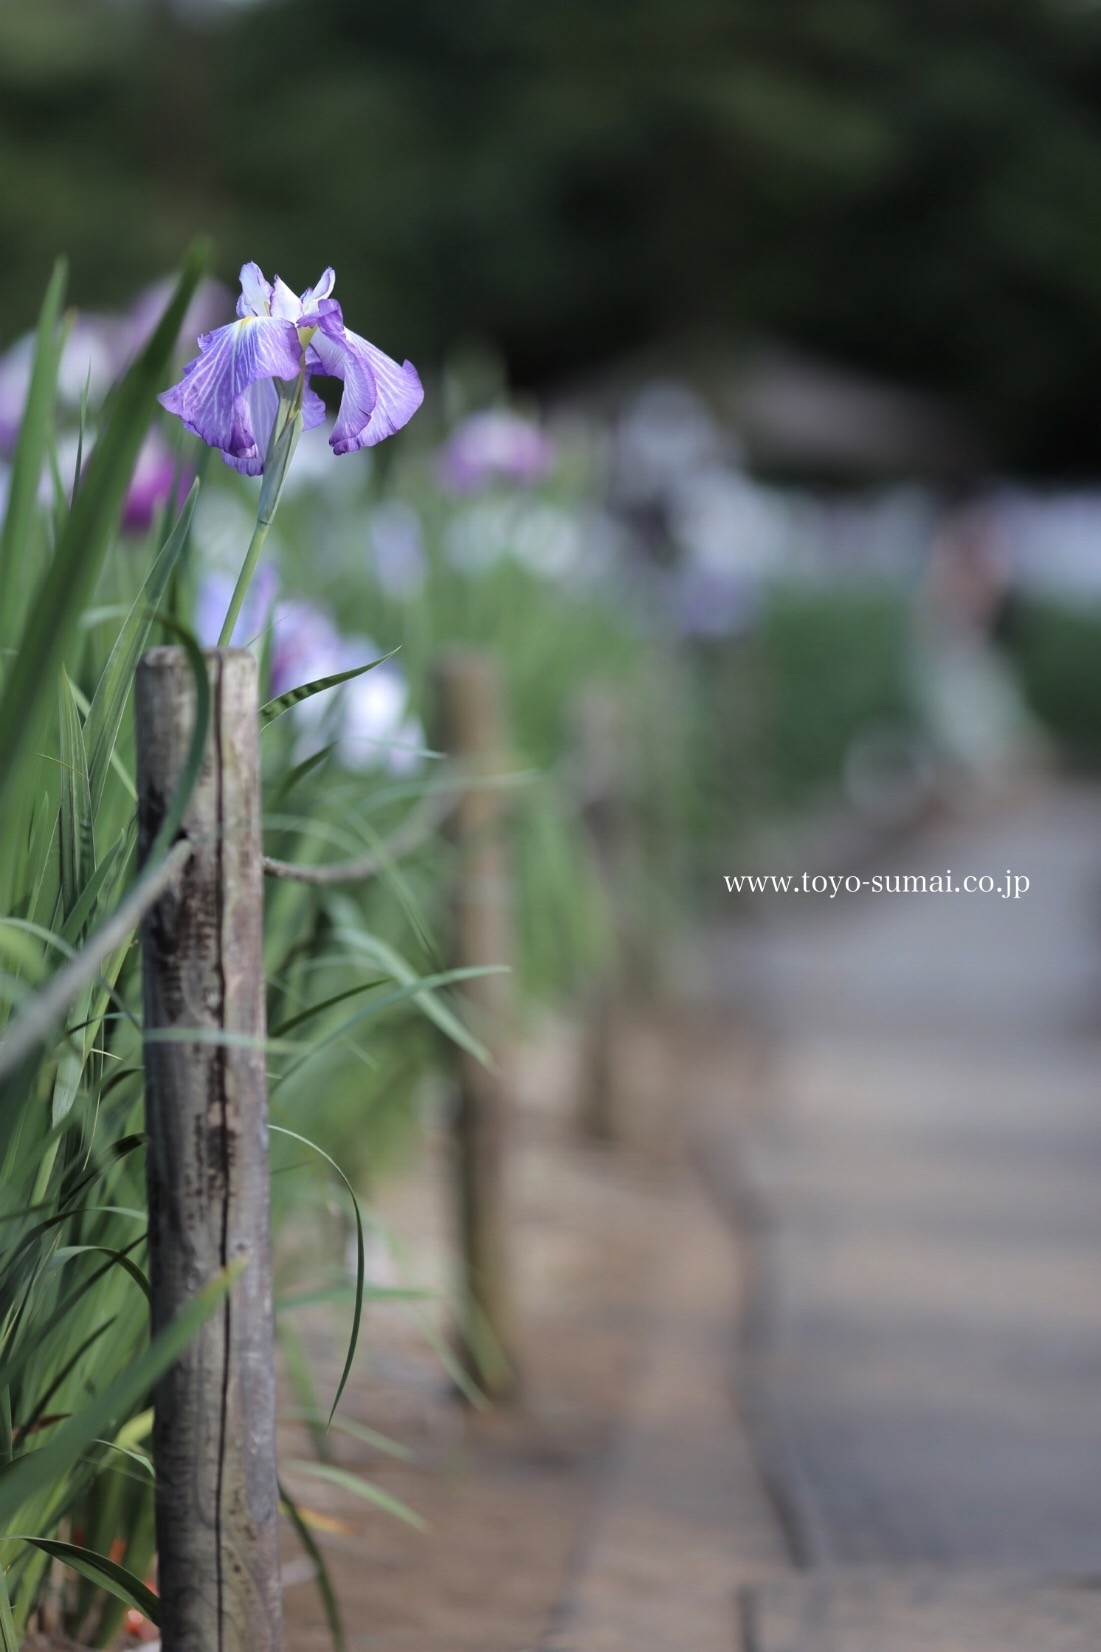 菖蒲の花が見頃です 見沼区 染谷しょうぶ園 新発見 さいたま の風景写真ブログ